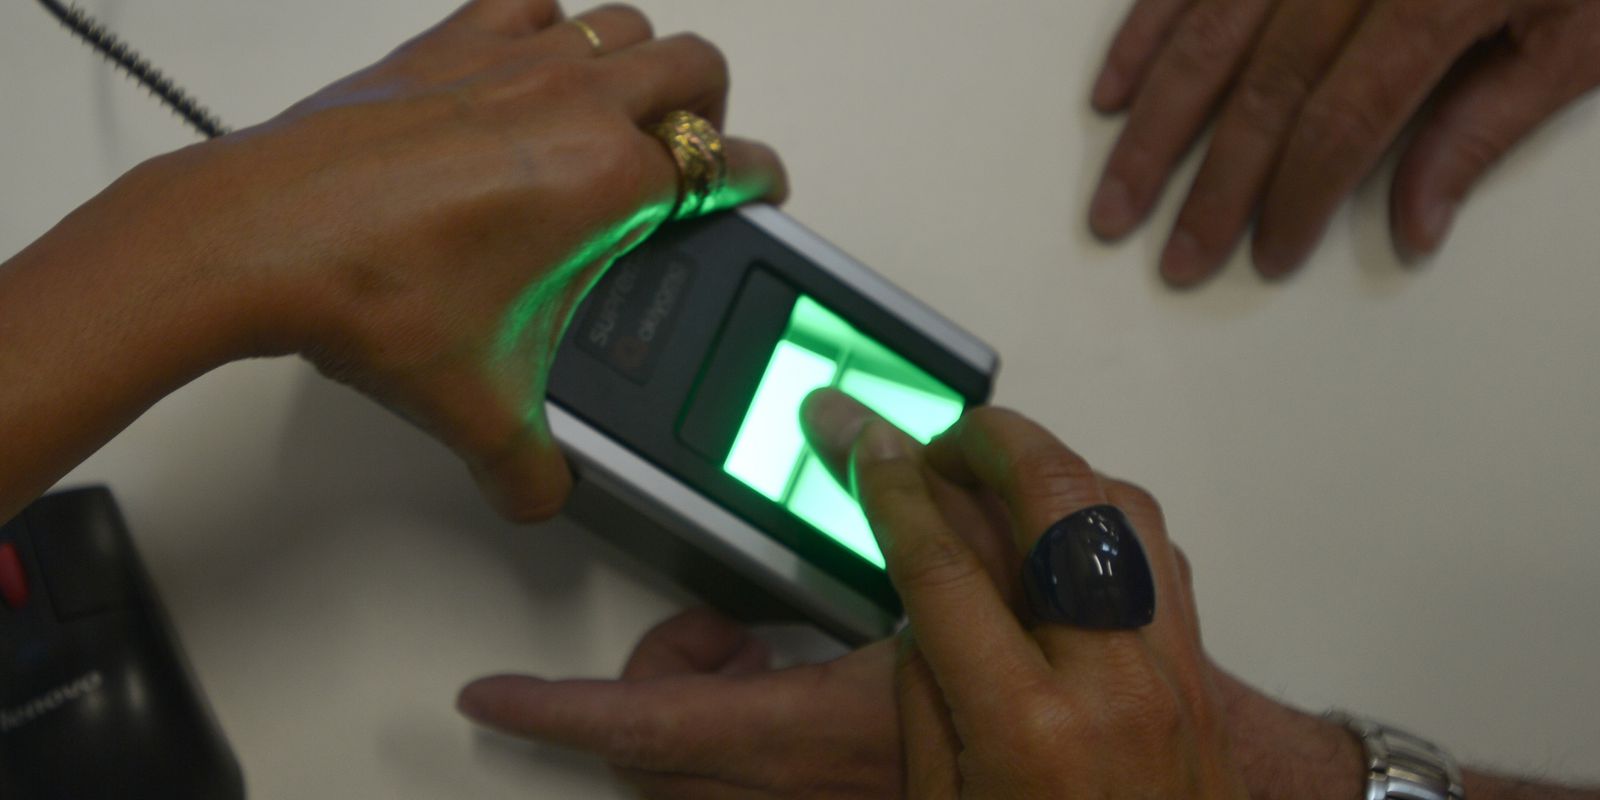 Quem já fez a biometria precisa fazer de novo?